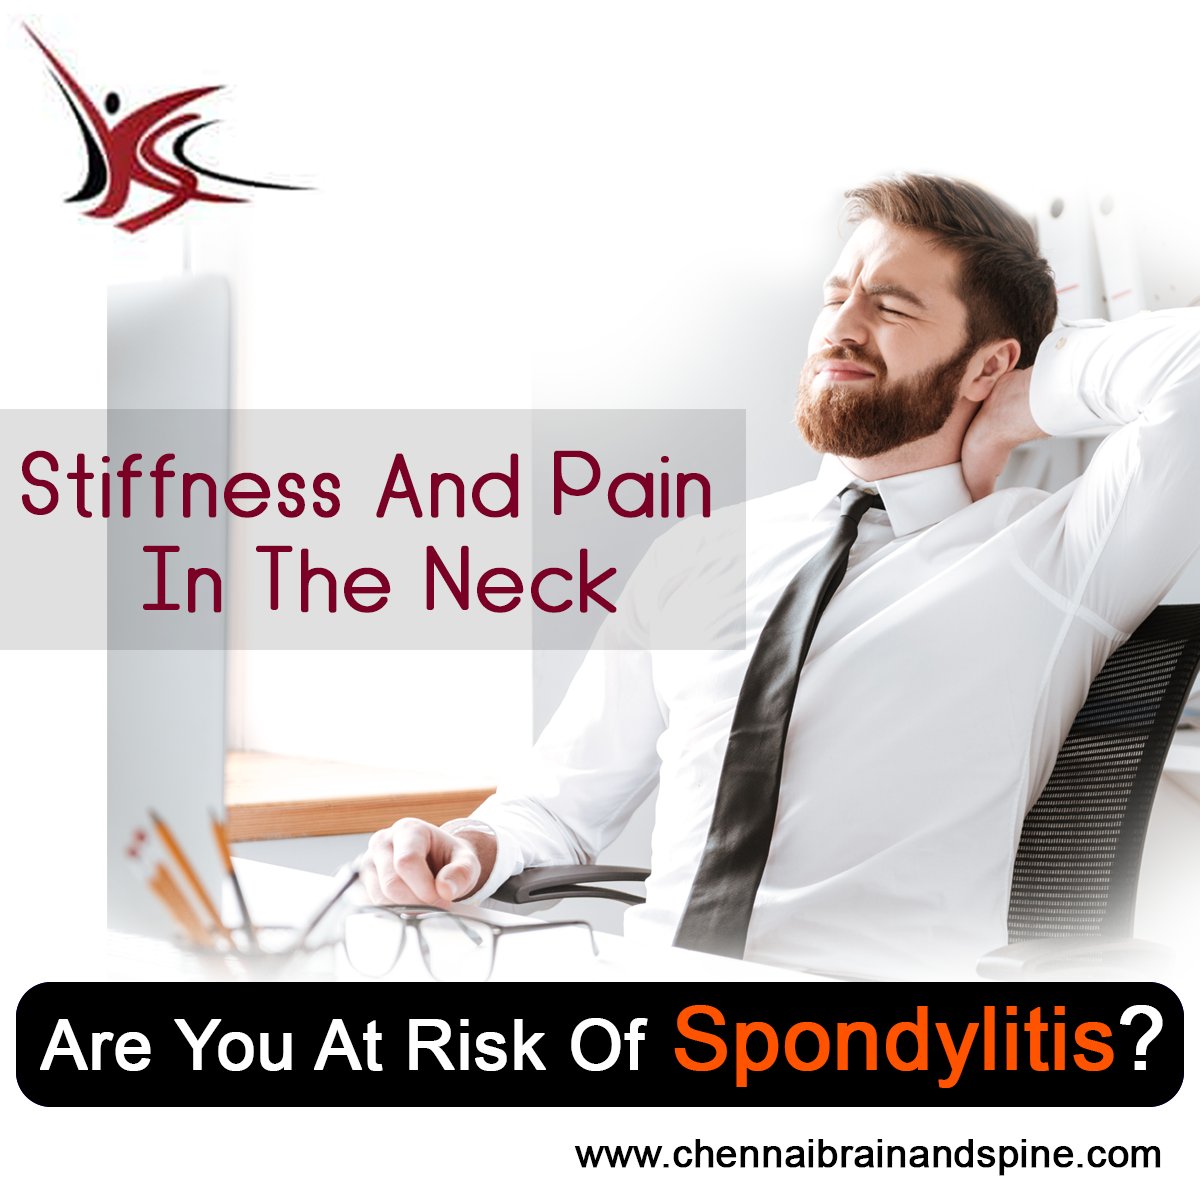 Are you at risk of Spondylitis? Get effective treatment @ chennaibrainandspine.com/spondylitis-tr….
#SpondylitisTreatment #Chennai #Tamilnadu #NeckPain